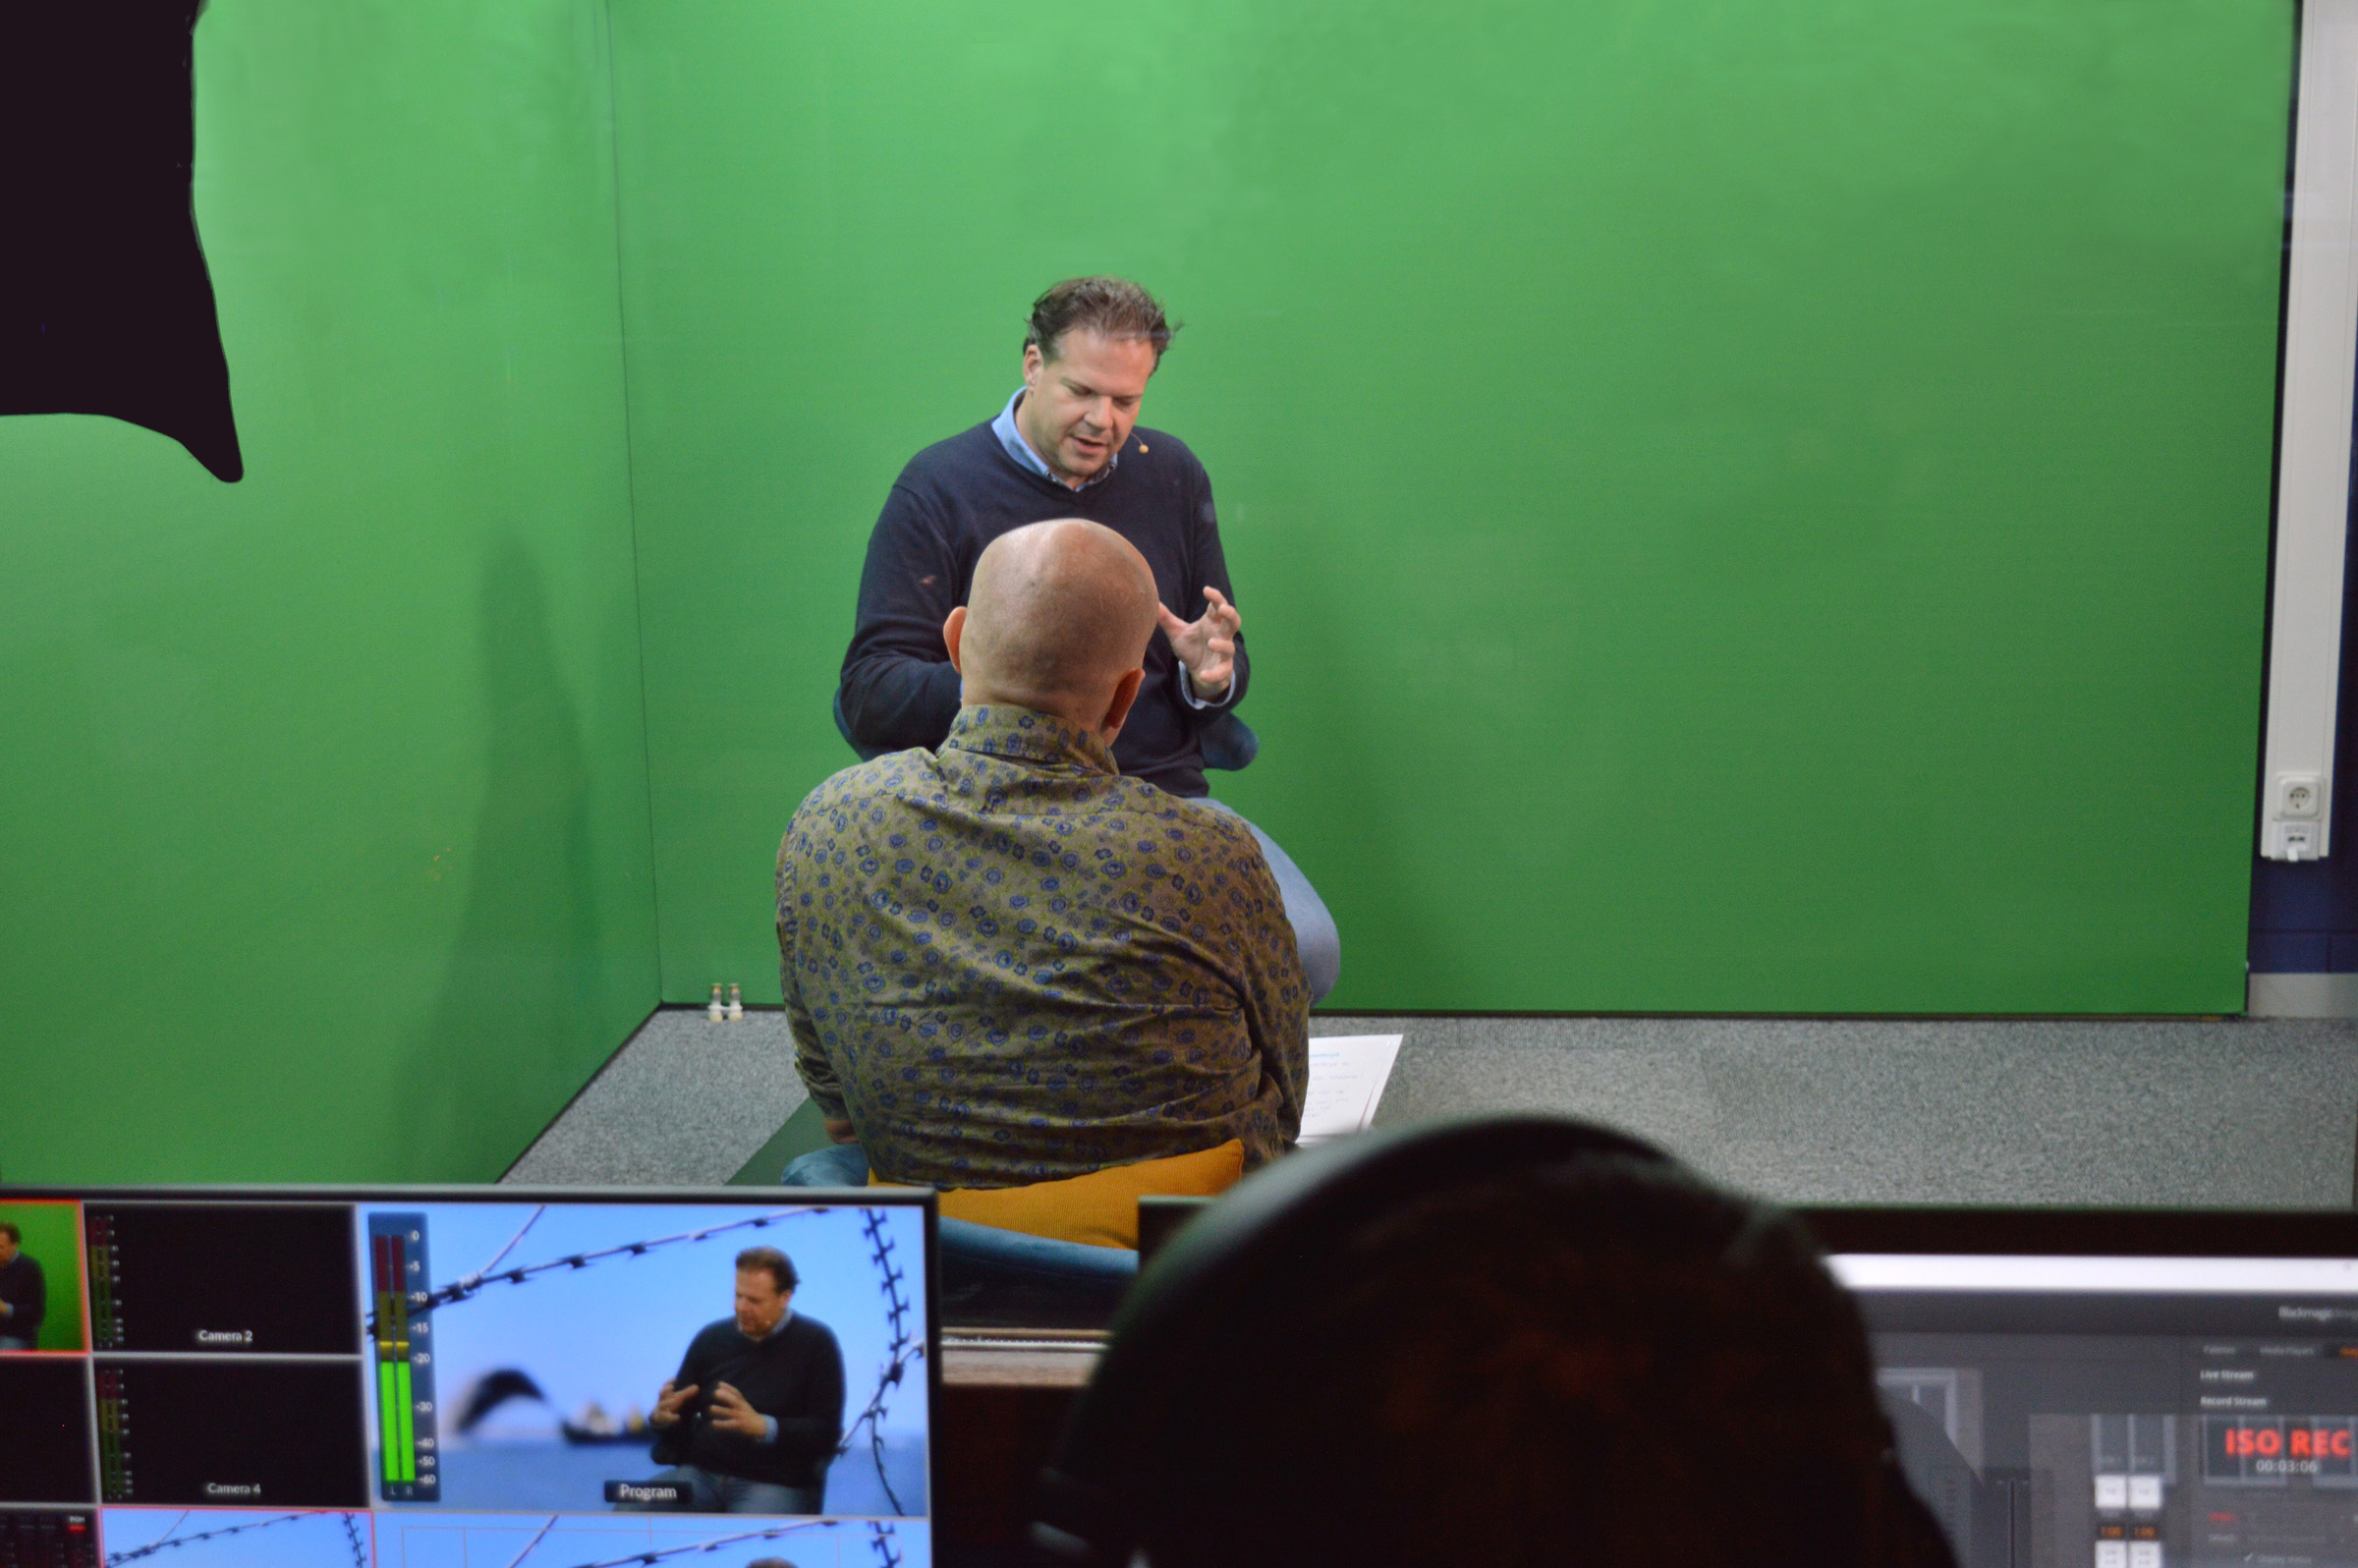 Een live interview in de greenscreen studio